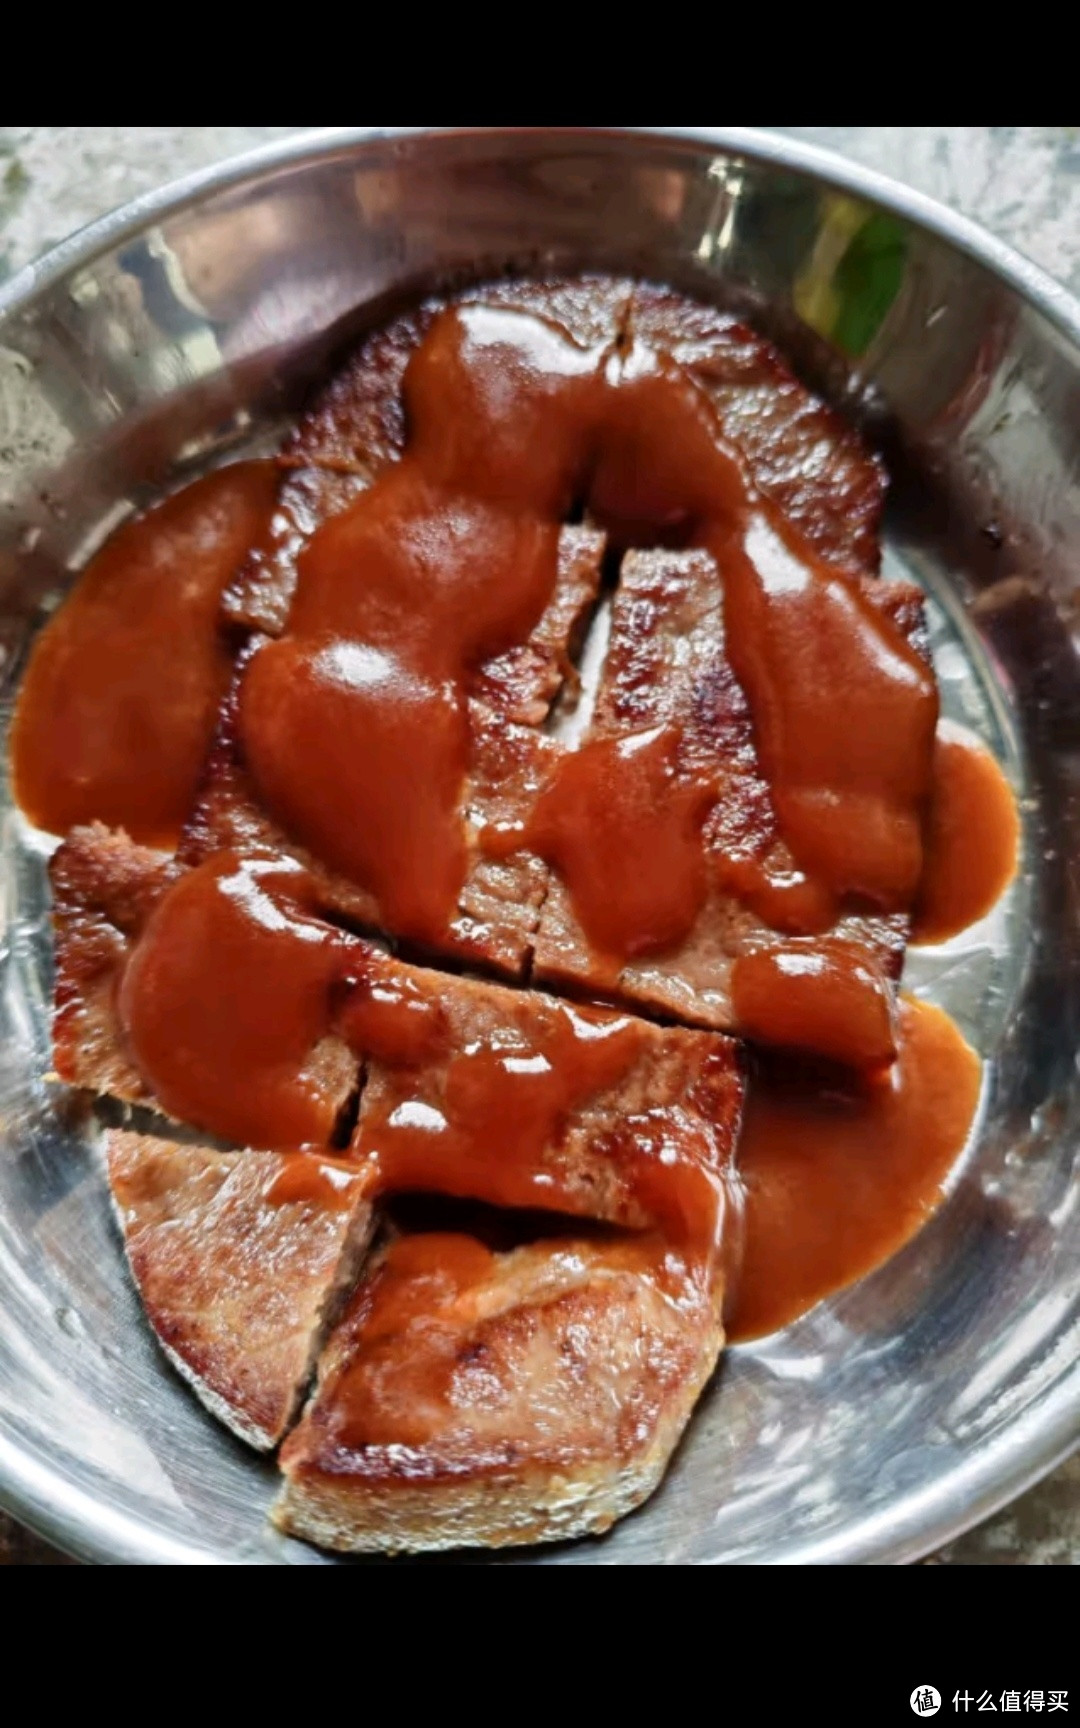 伊赛 国产儿童牛排套餐 整切调理 500g(5片) +番茄酱包100g/5袋 冷冻